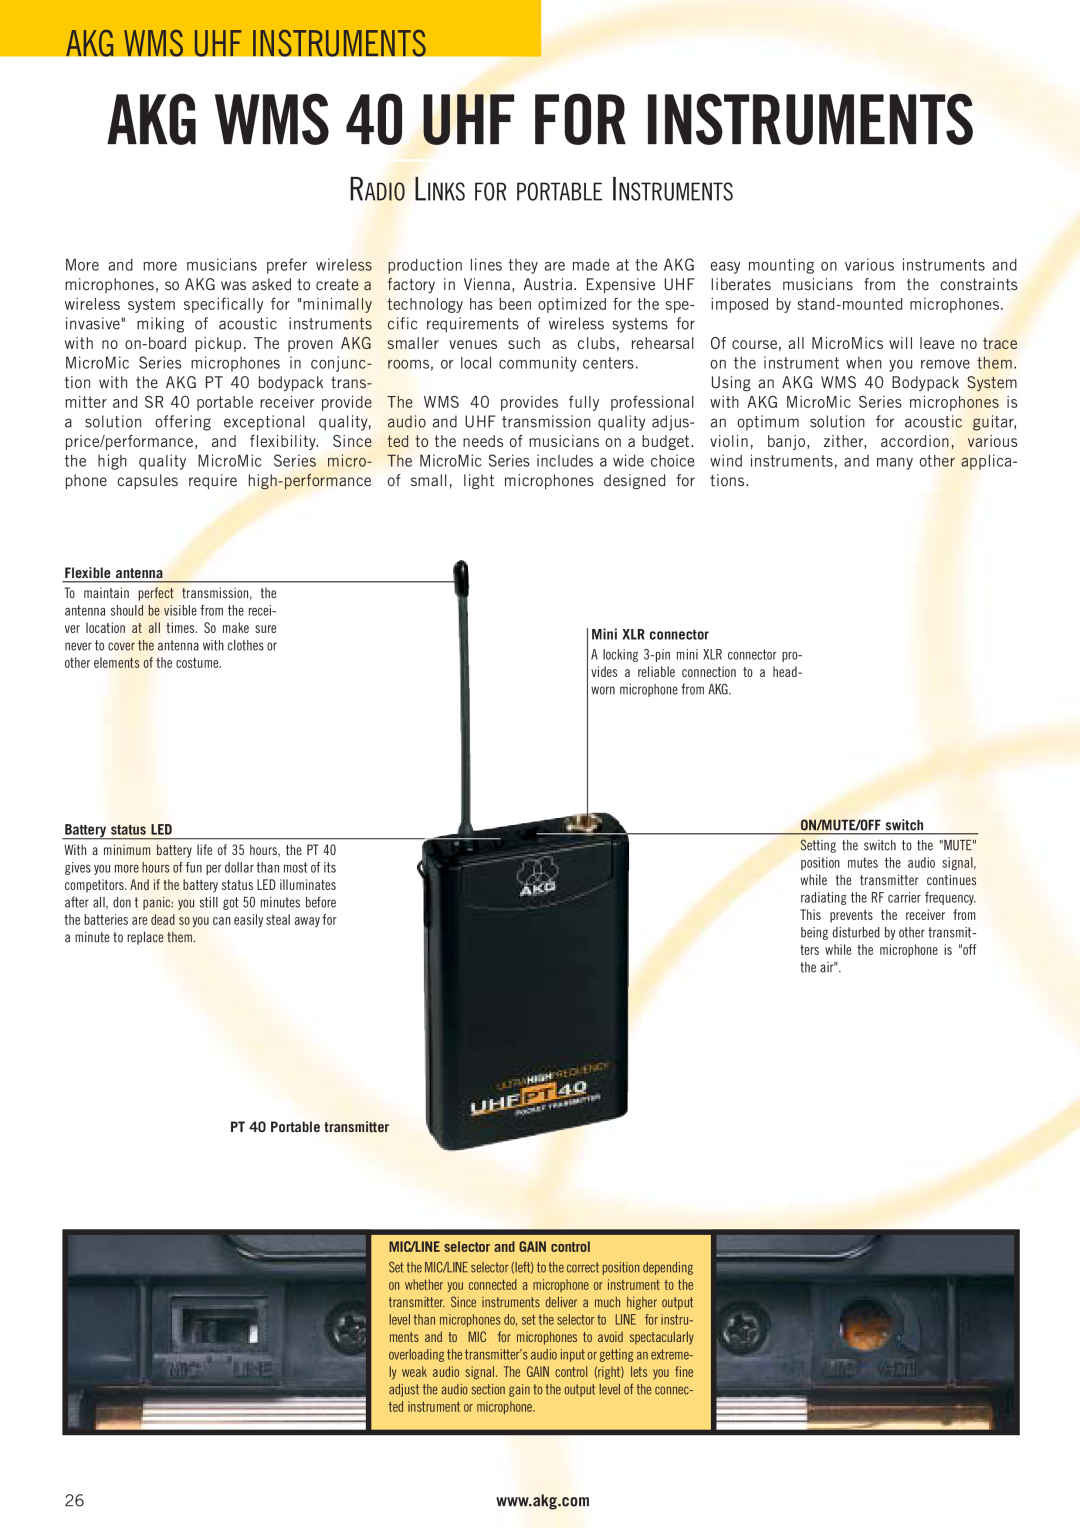 AKG Acoustics WMS 4000 AKG WMS 40 UHF FOR INSTRUMENTS, Akg Wms Uhf Instruments, Radio Links For Portable Instruments 